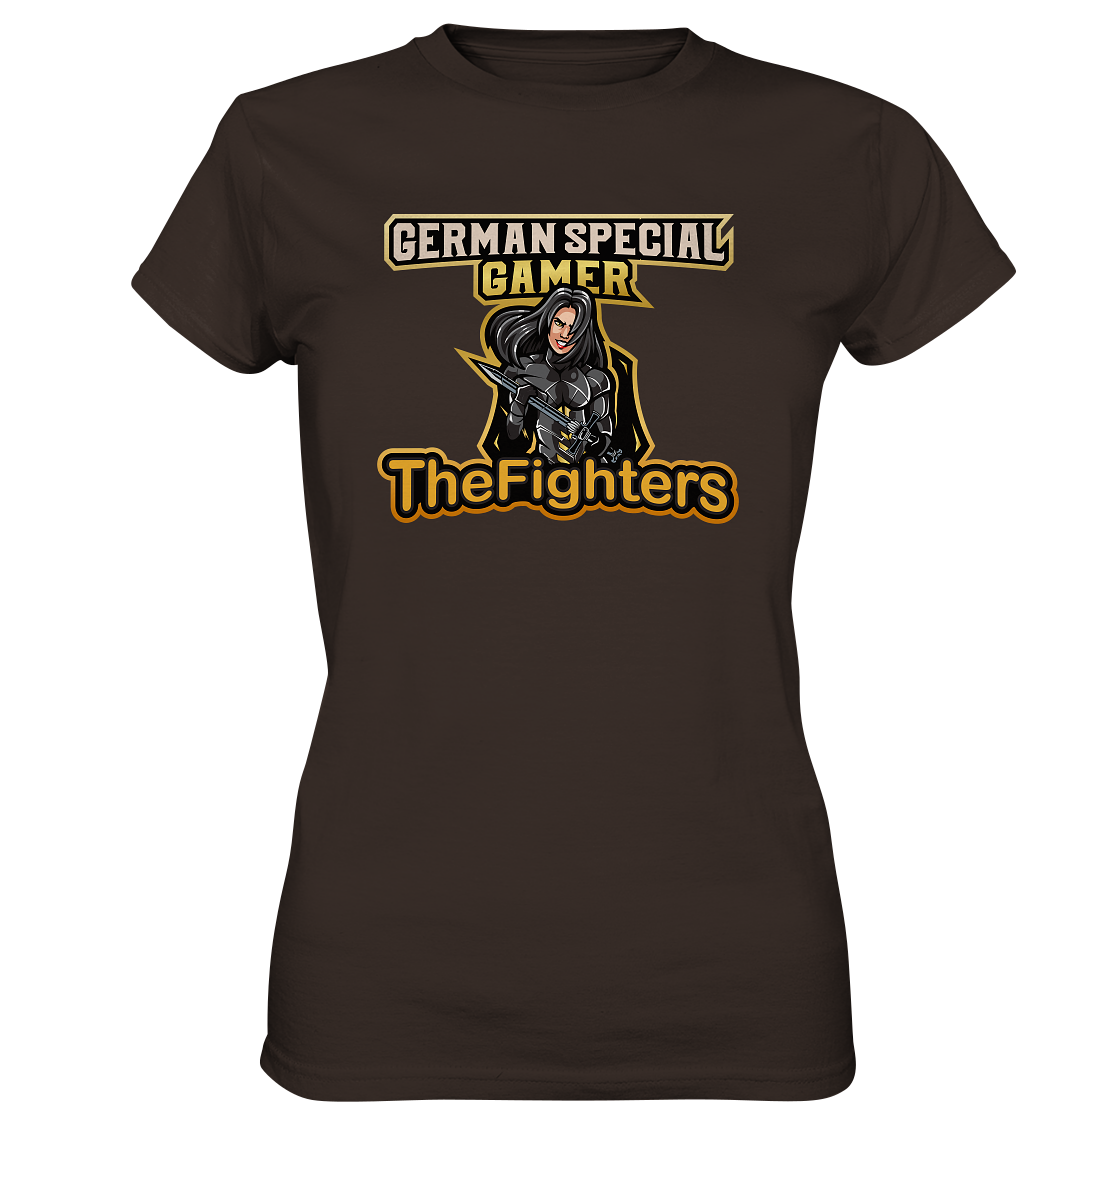 GERMAN SPECIAL GAMER â THE FIGHTERS - Ladies Basic Shirt